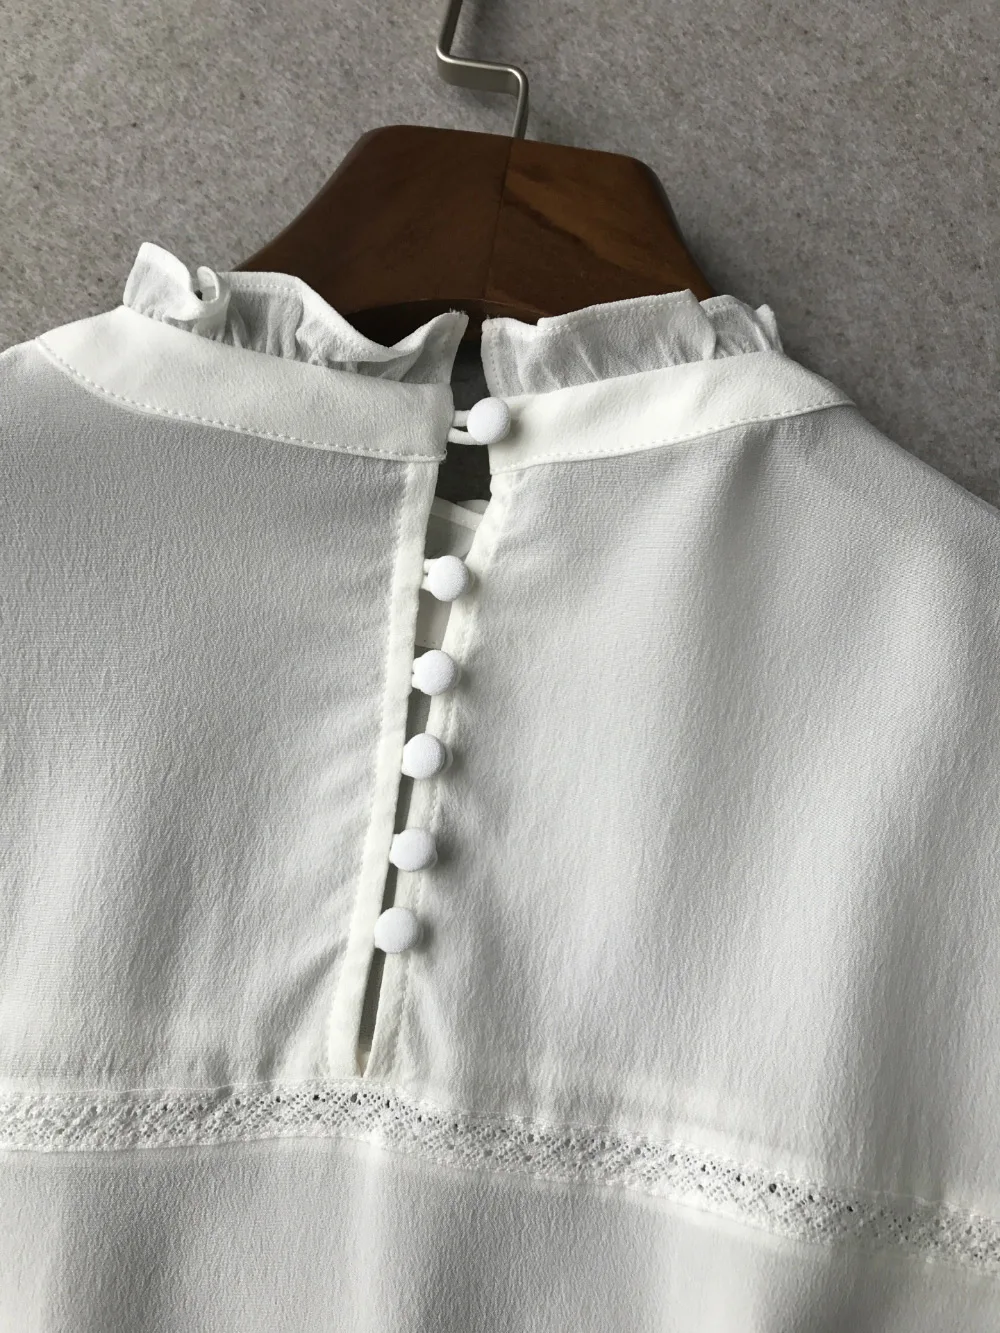 Высококачественная Женская шелковая блузка белого/бордового/темно-зеленого цвета топ с оборками и спинкой с пуговицами и кружевными вставками